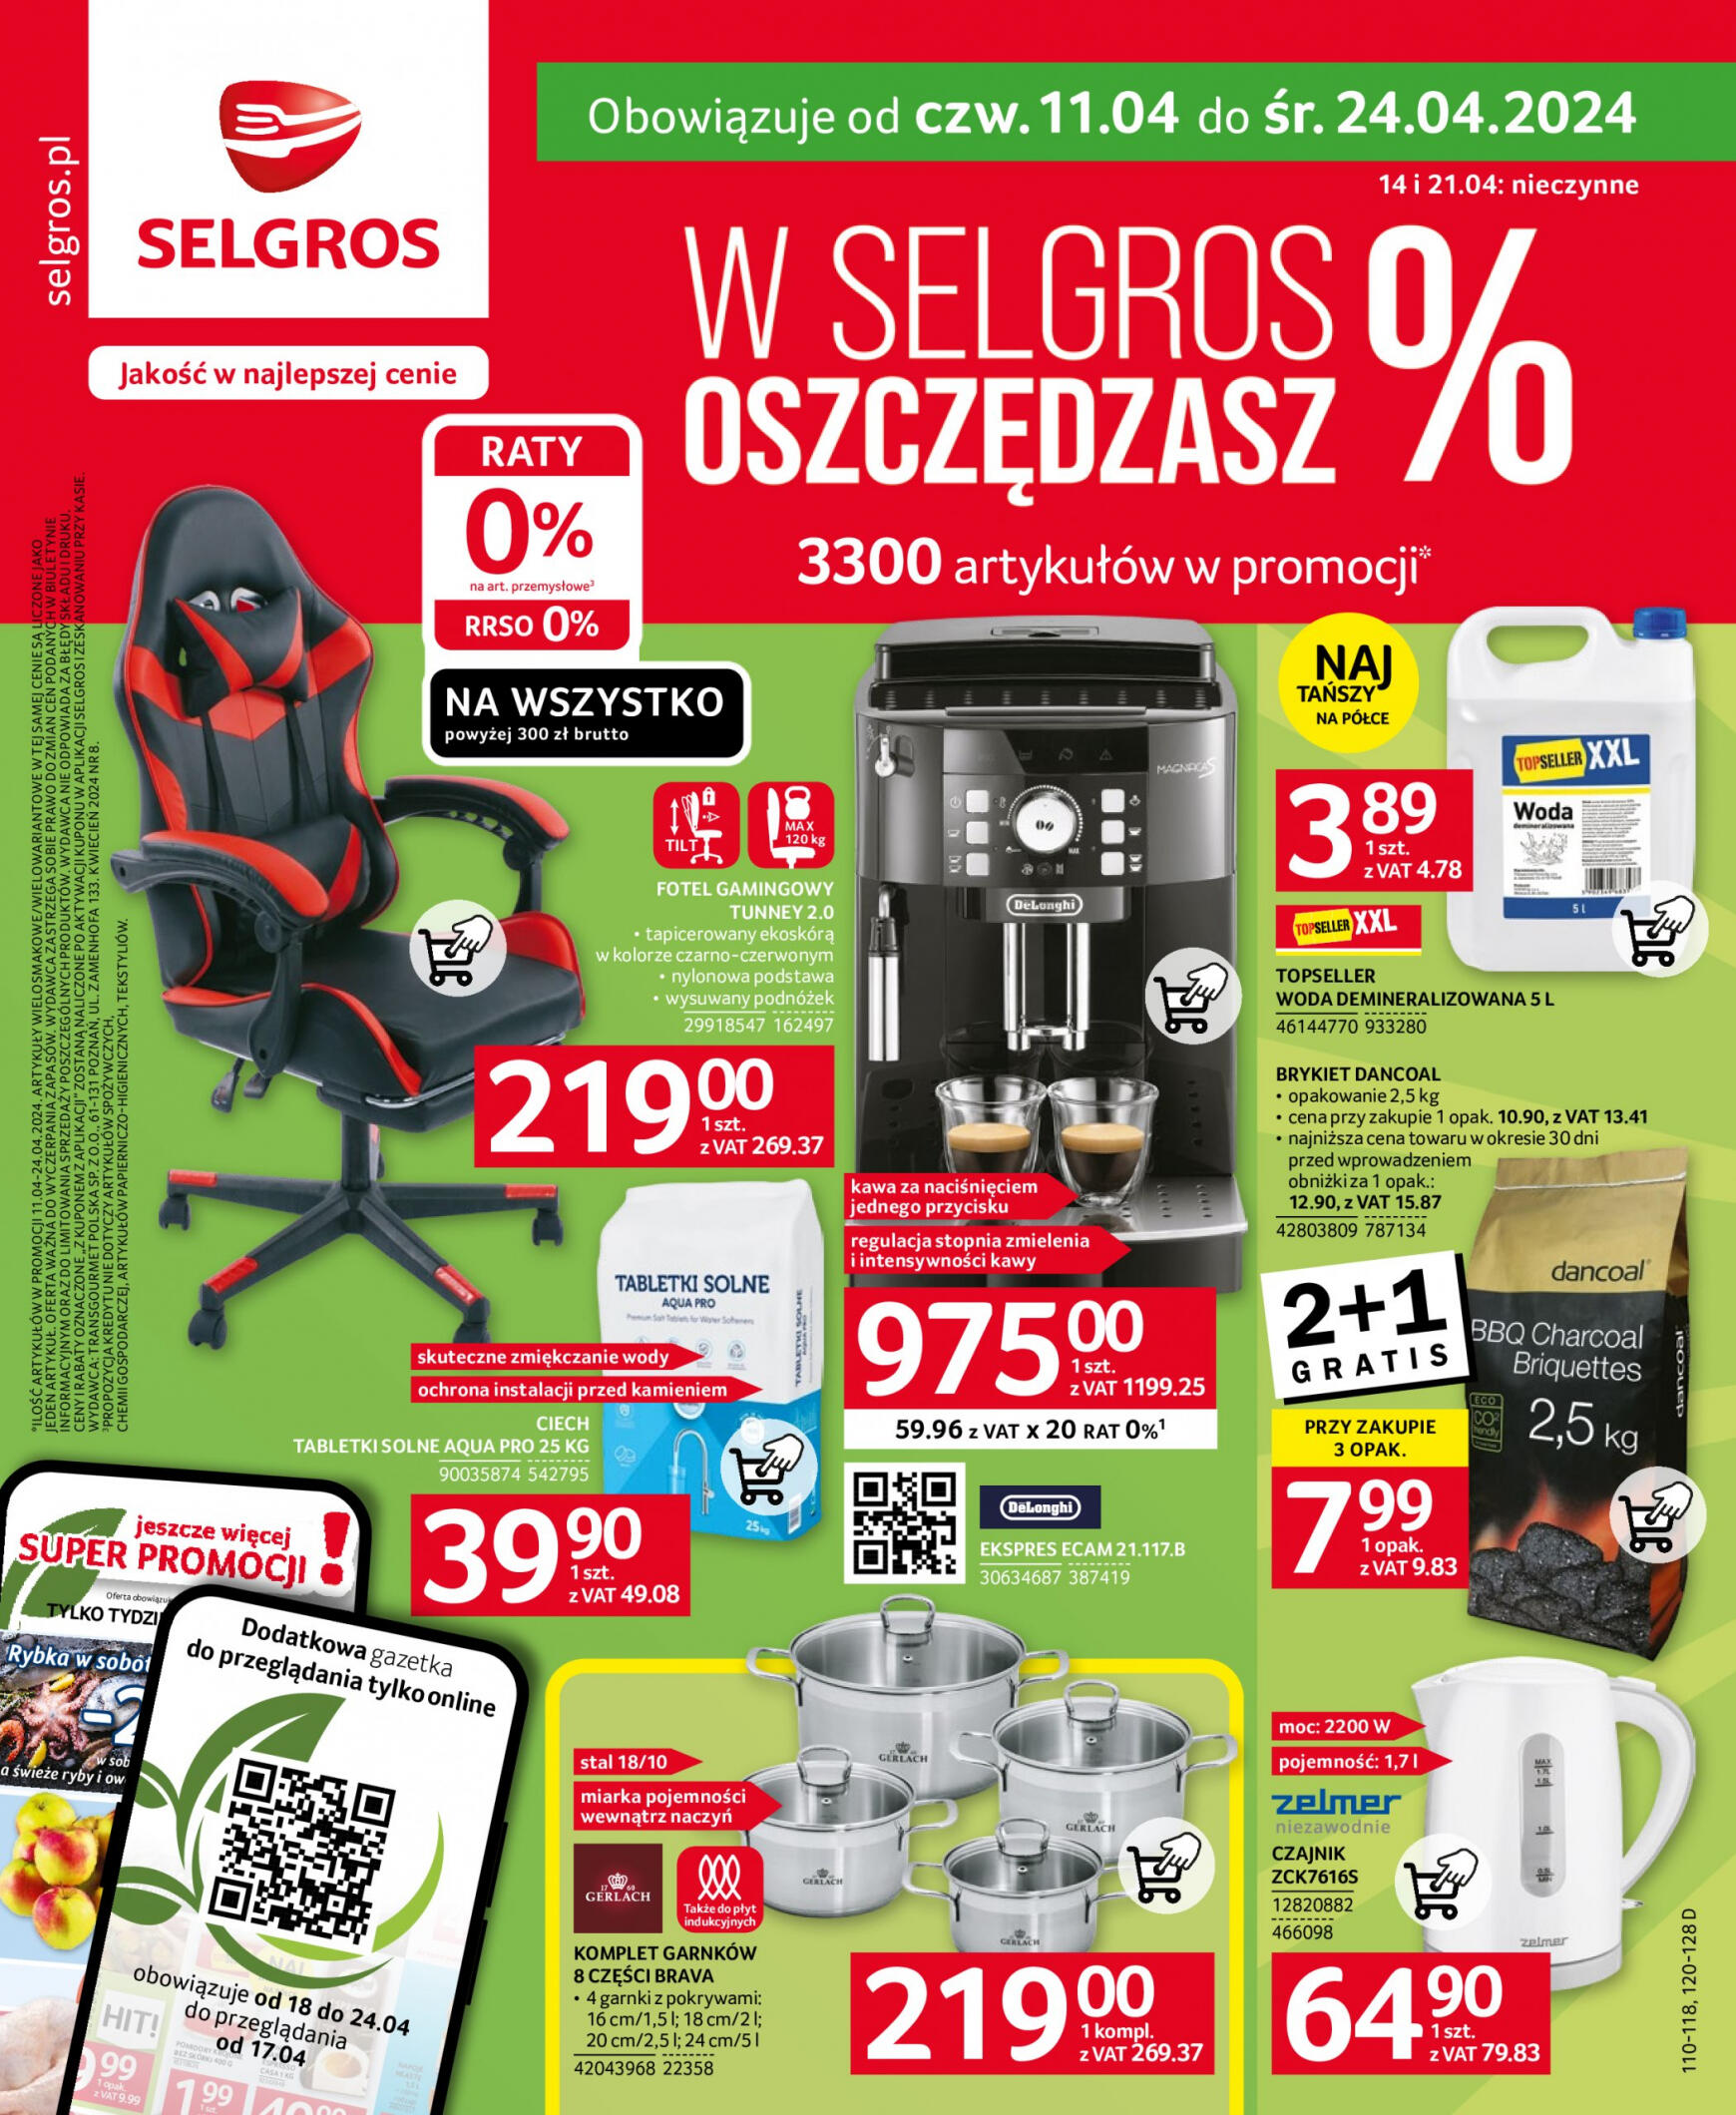 selgros - Selgros cash&carry - Oferta Przemysłowa gazetka aktualna ważna od 11.04. - 24.04. - page: 1